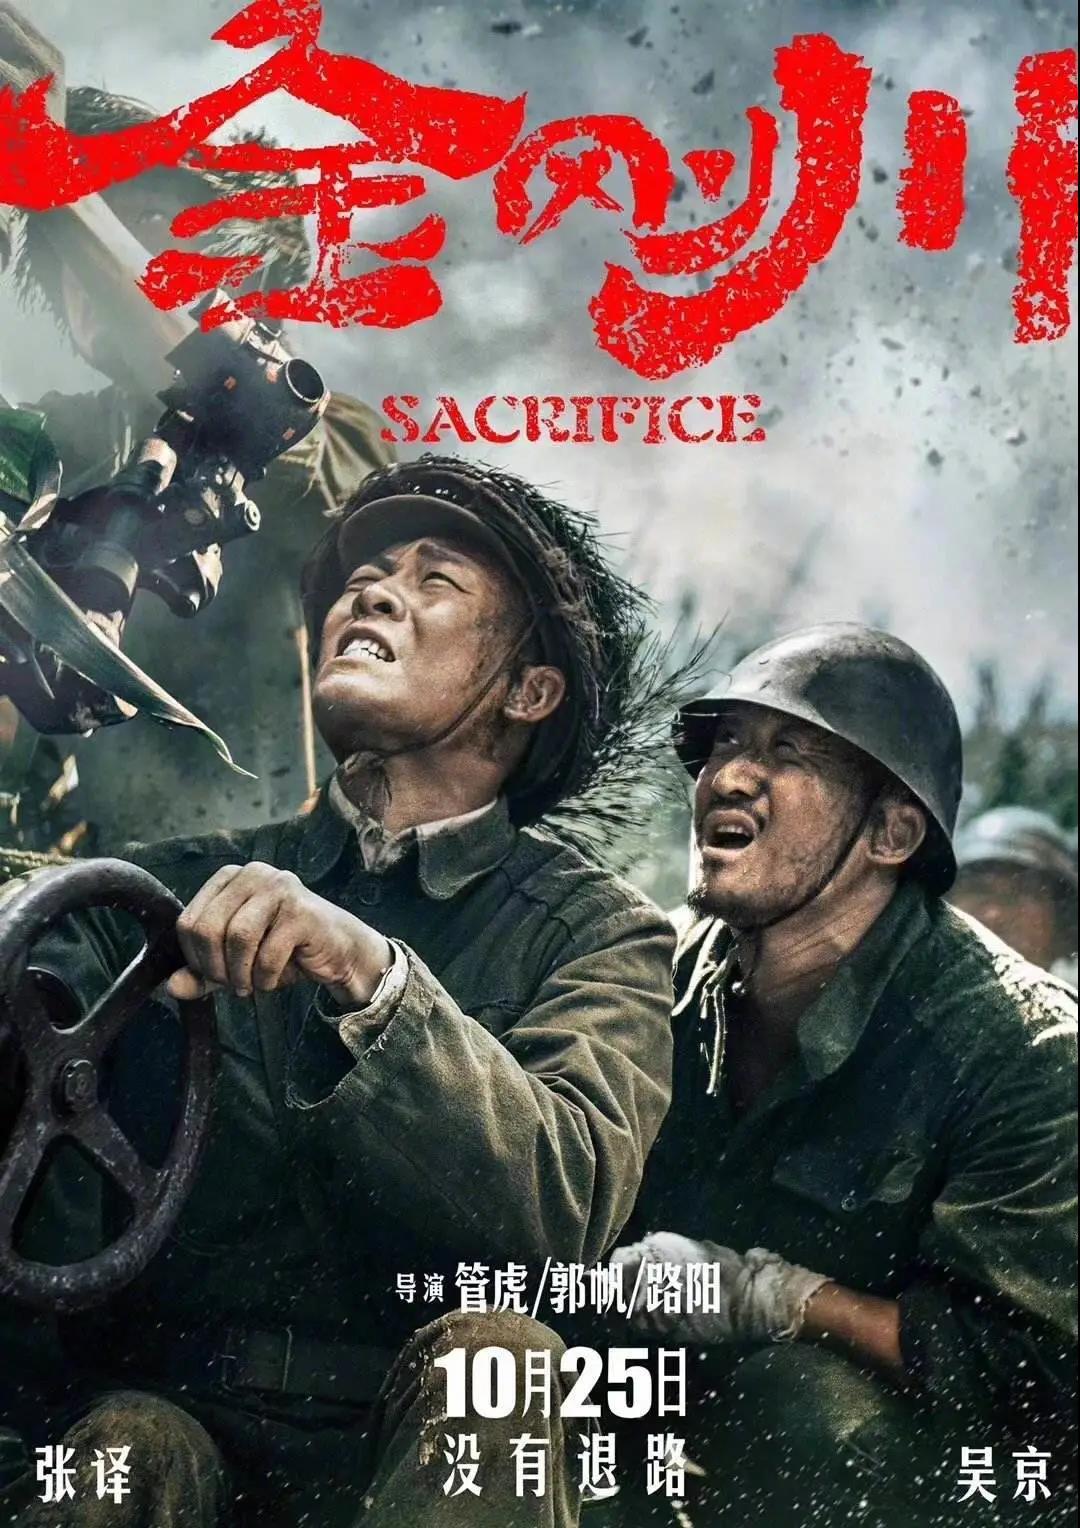 电影《金刚川》背后的金城战役:中国志愿军打得最痛快